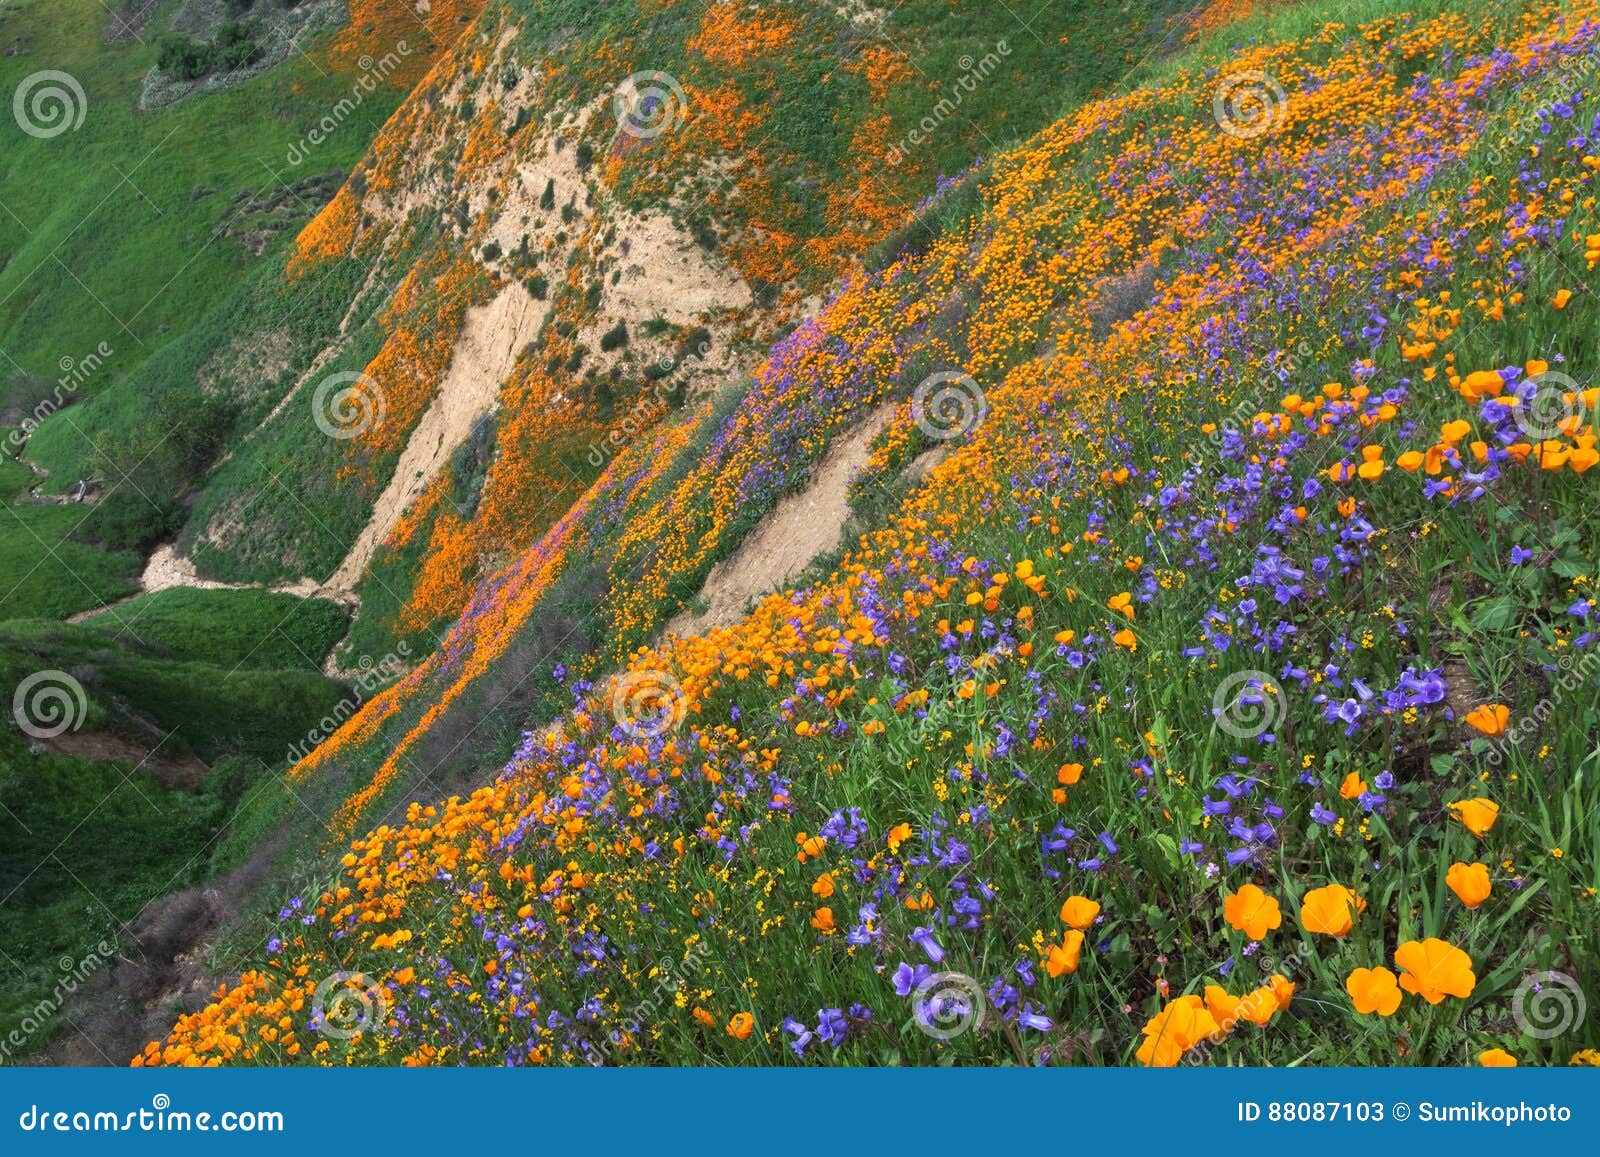 chino hills wildflower